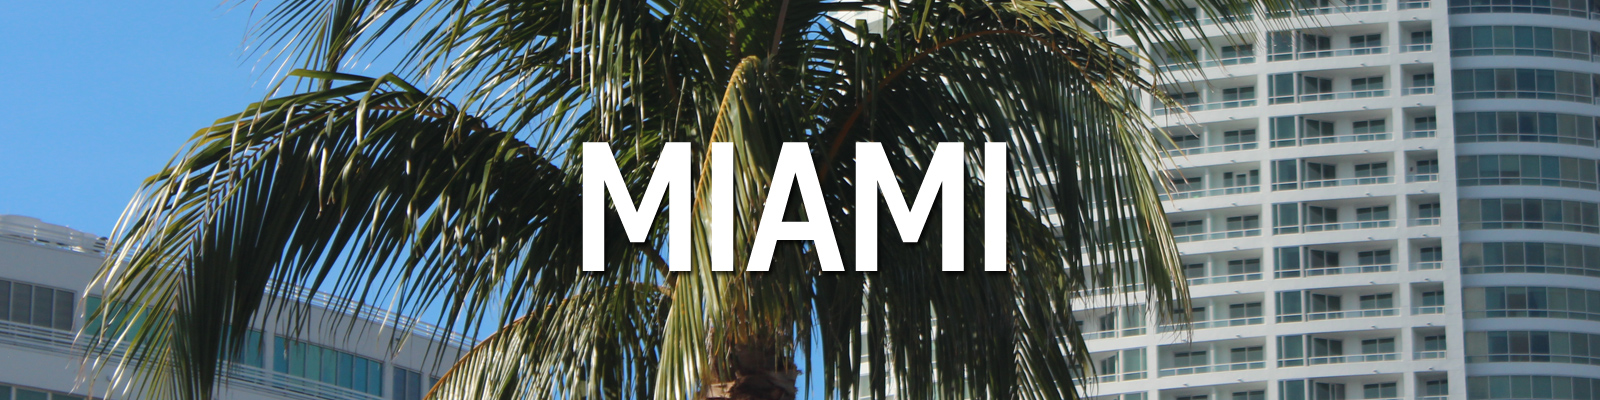 Miami Travel